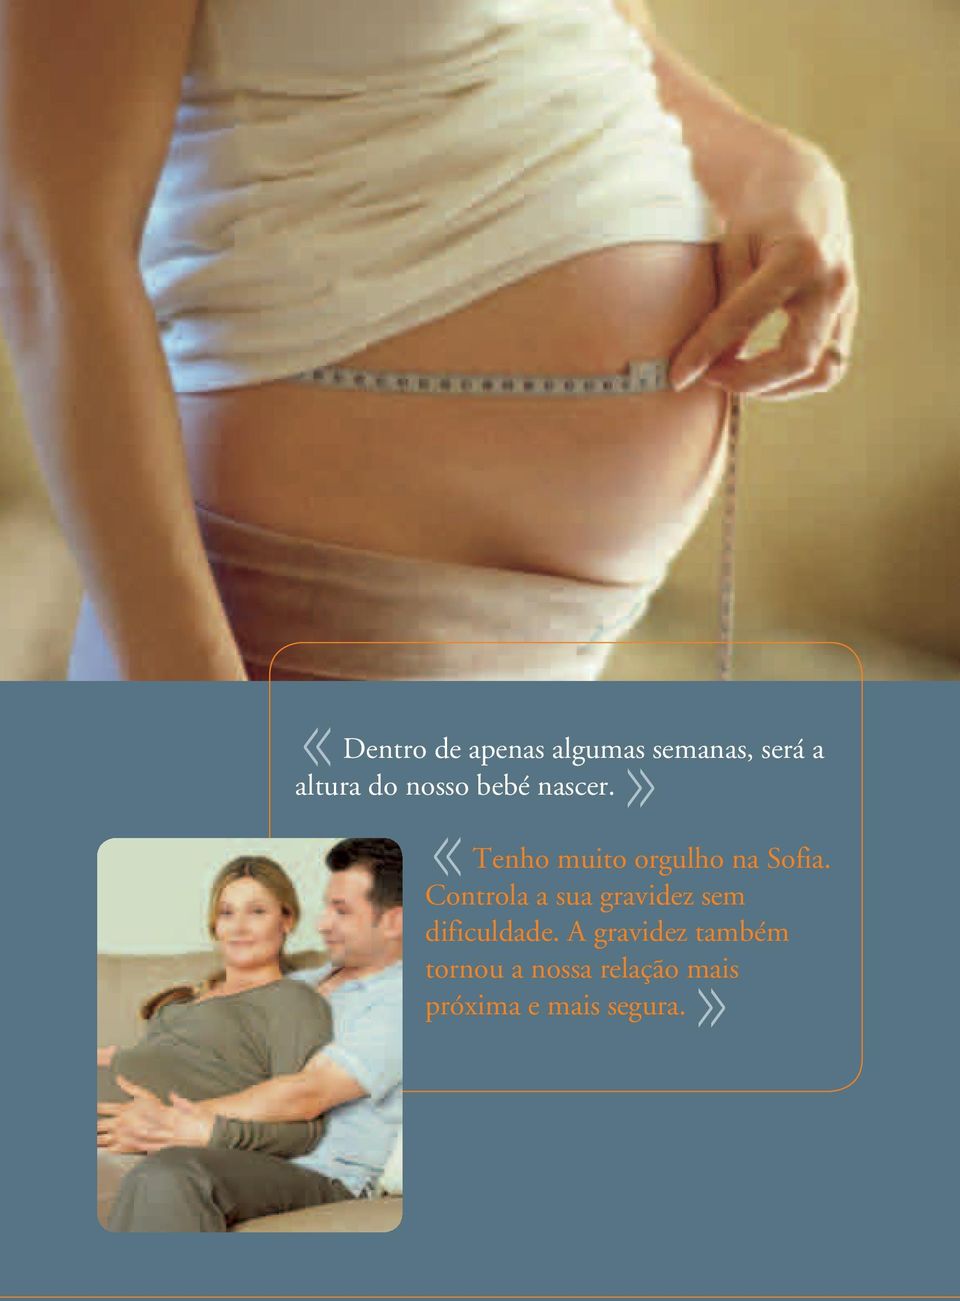 Controla a sua gravidez sem dificuldade.